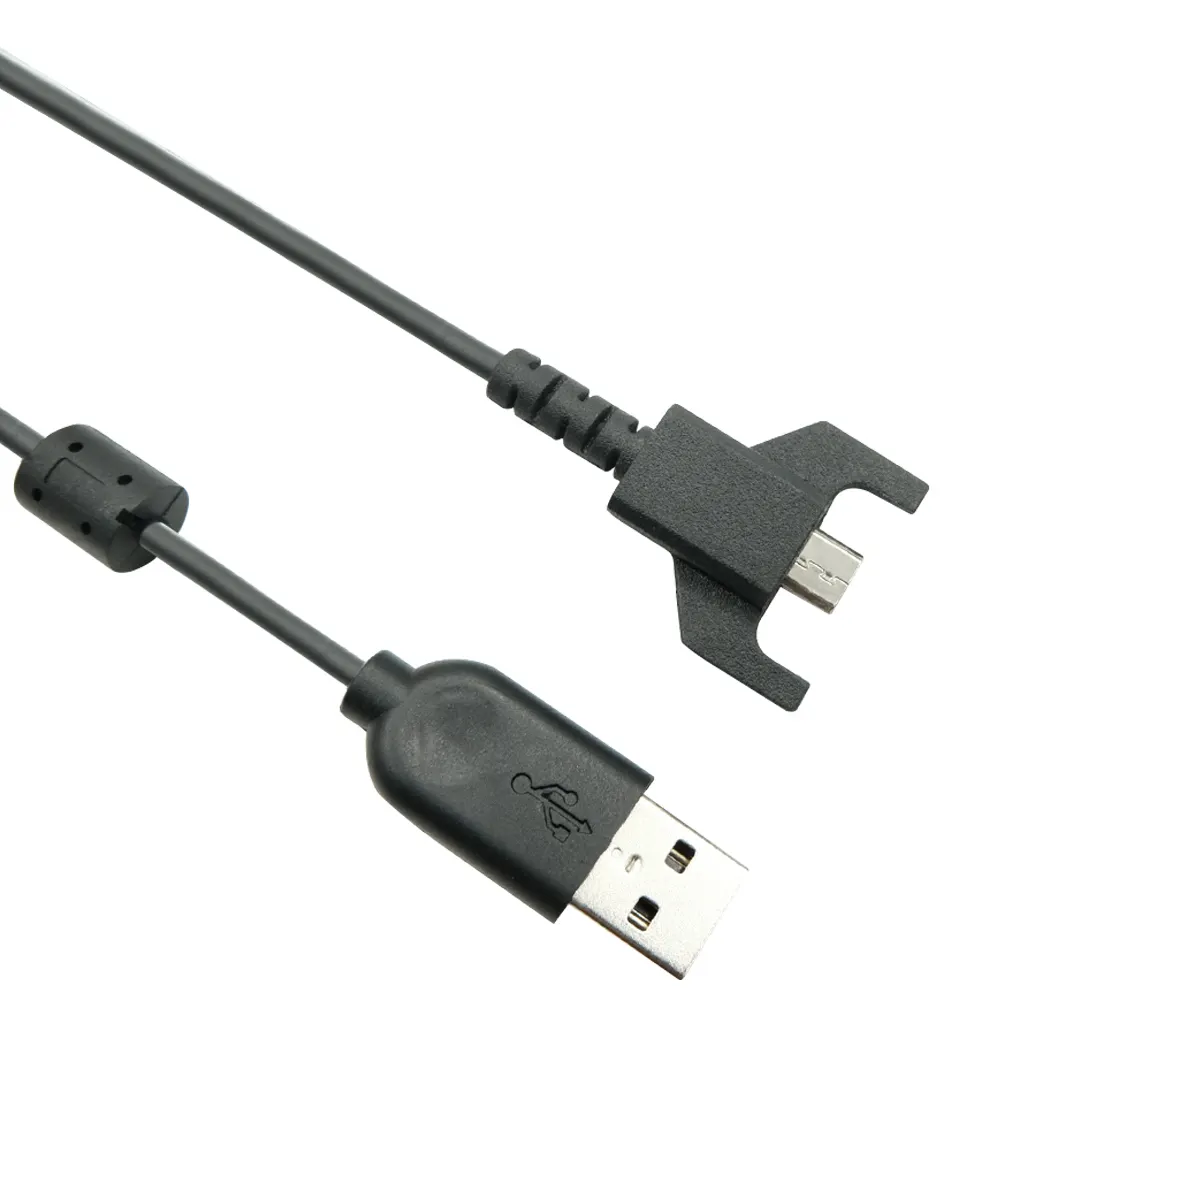 Cabo de carregamento USB original Logitech para mouse gaming G703 G900 G903 G Pro sem fio G Pro X Superlight, USB para Micro USB (Preto)